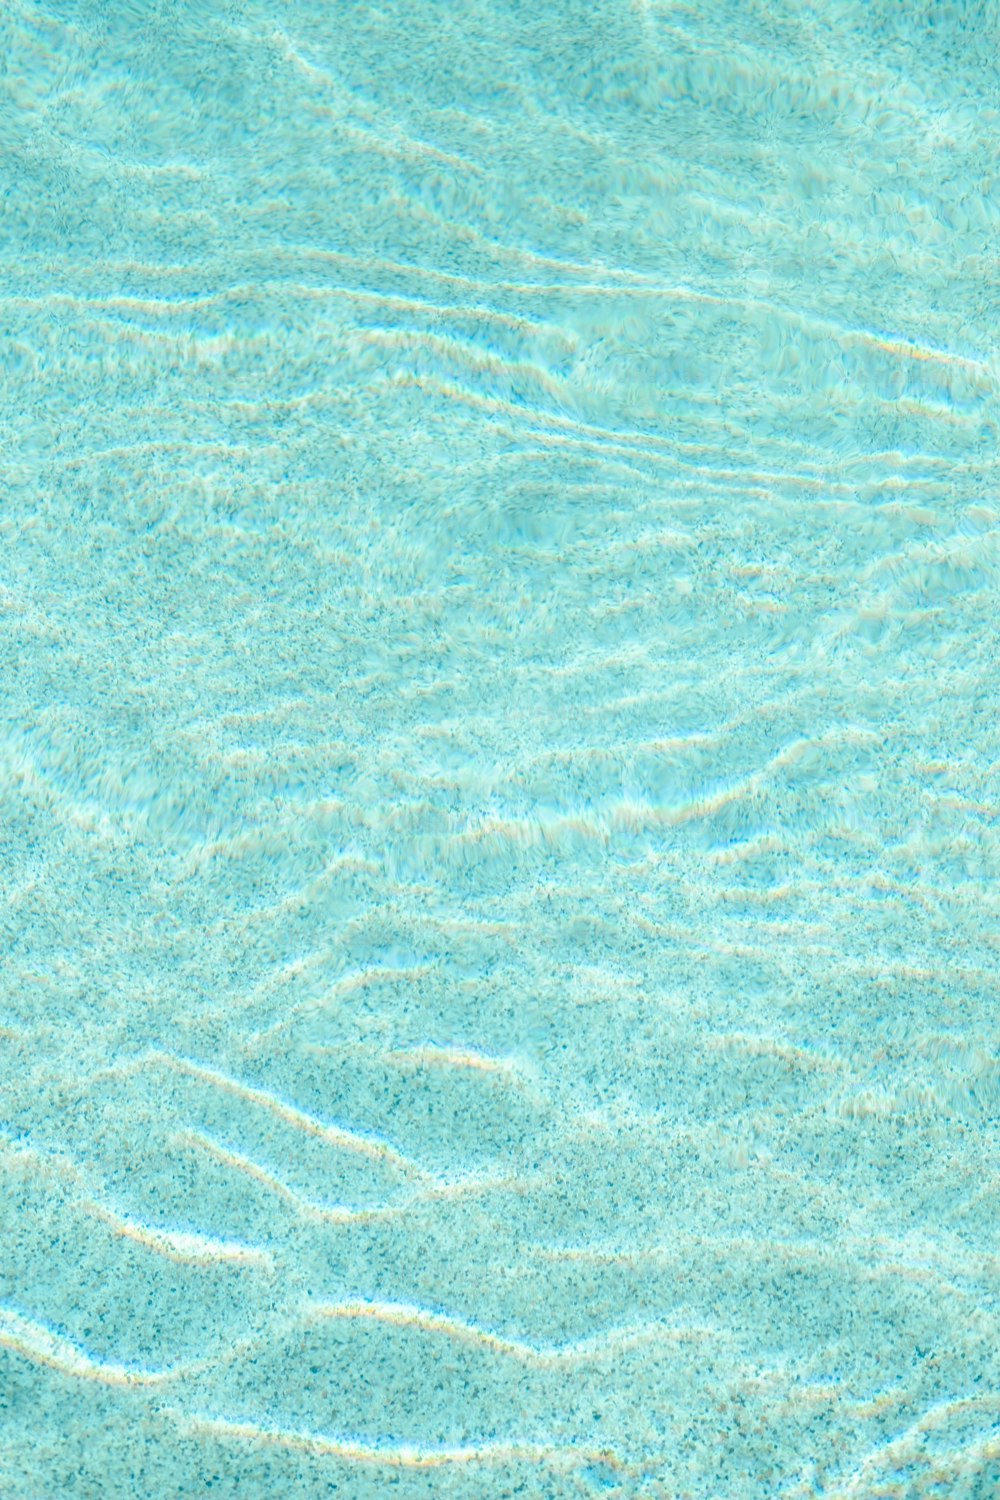 une piscine bleue avec de l’eau claire et des ondulations